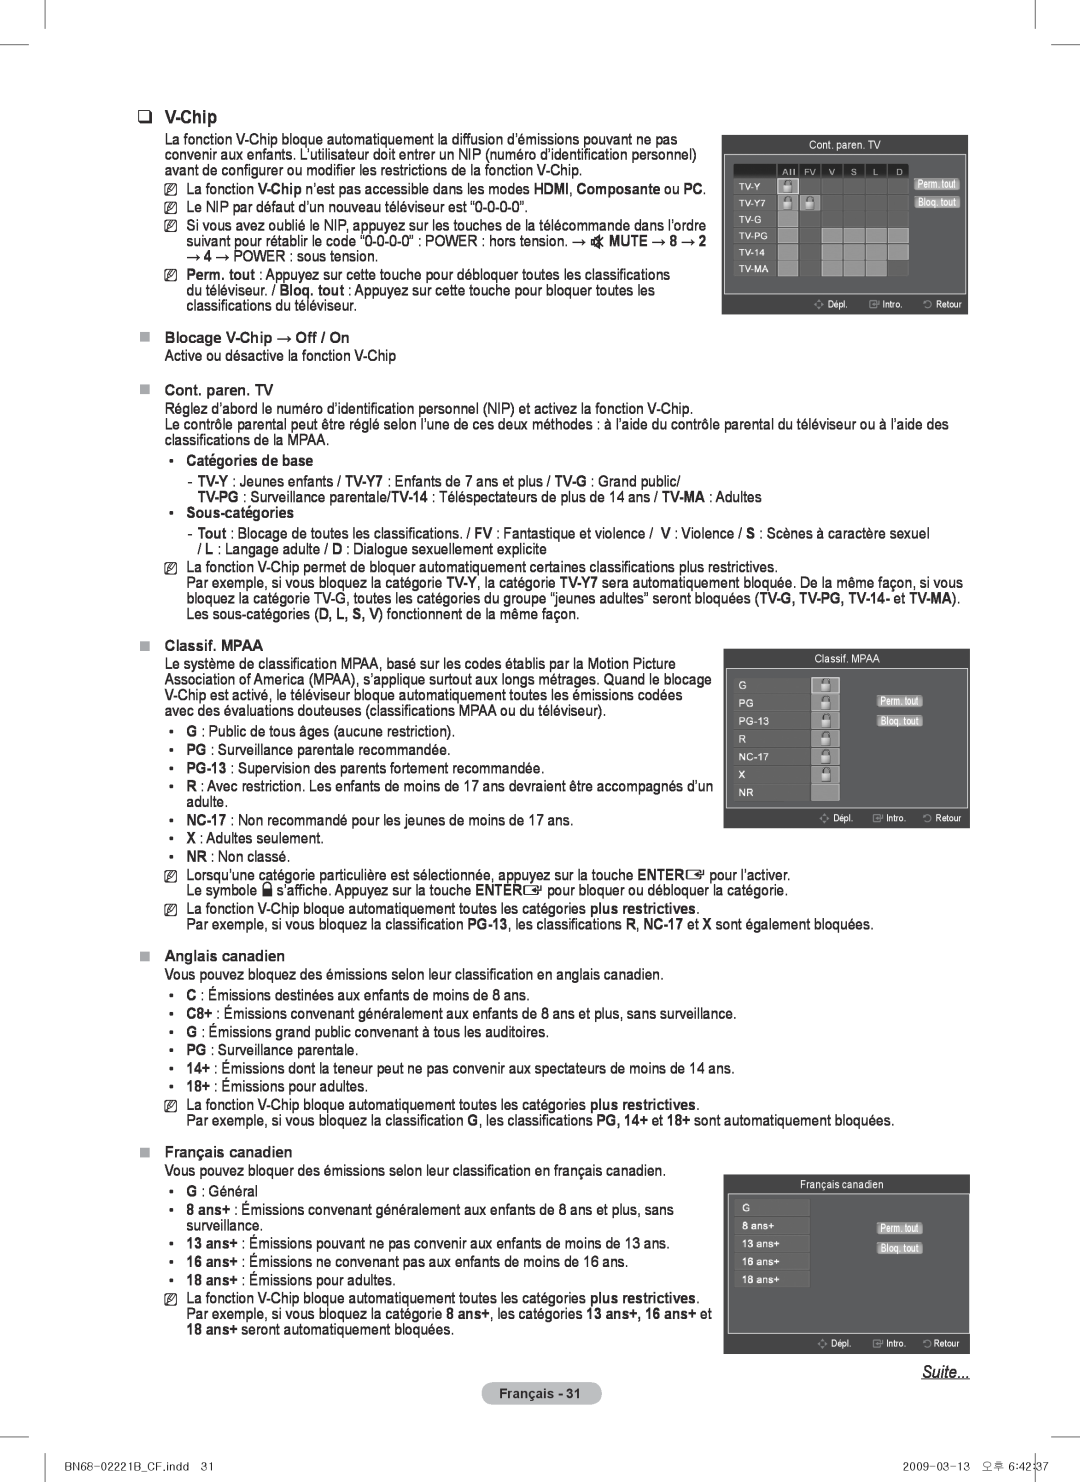 Samsung PN50B550TF Suite,  Blocage V-Chip → Off / On,  Cont. paren. TV, Catégories de base, Sous-catégories 